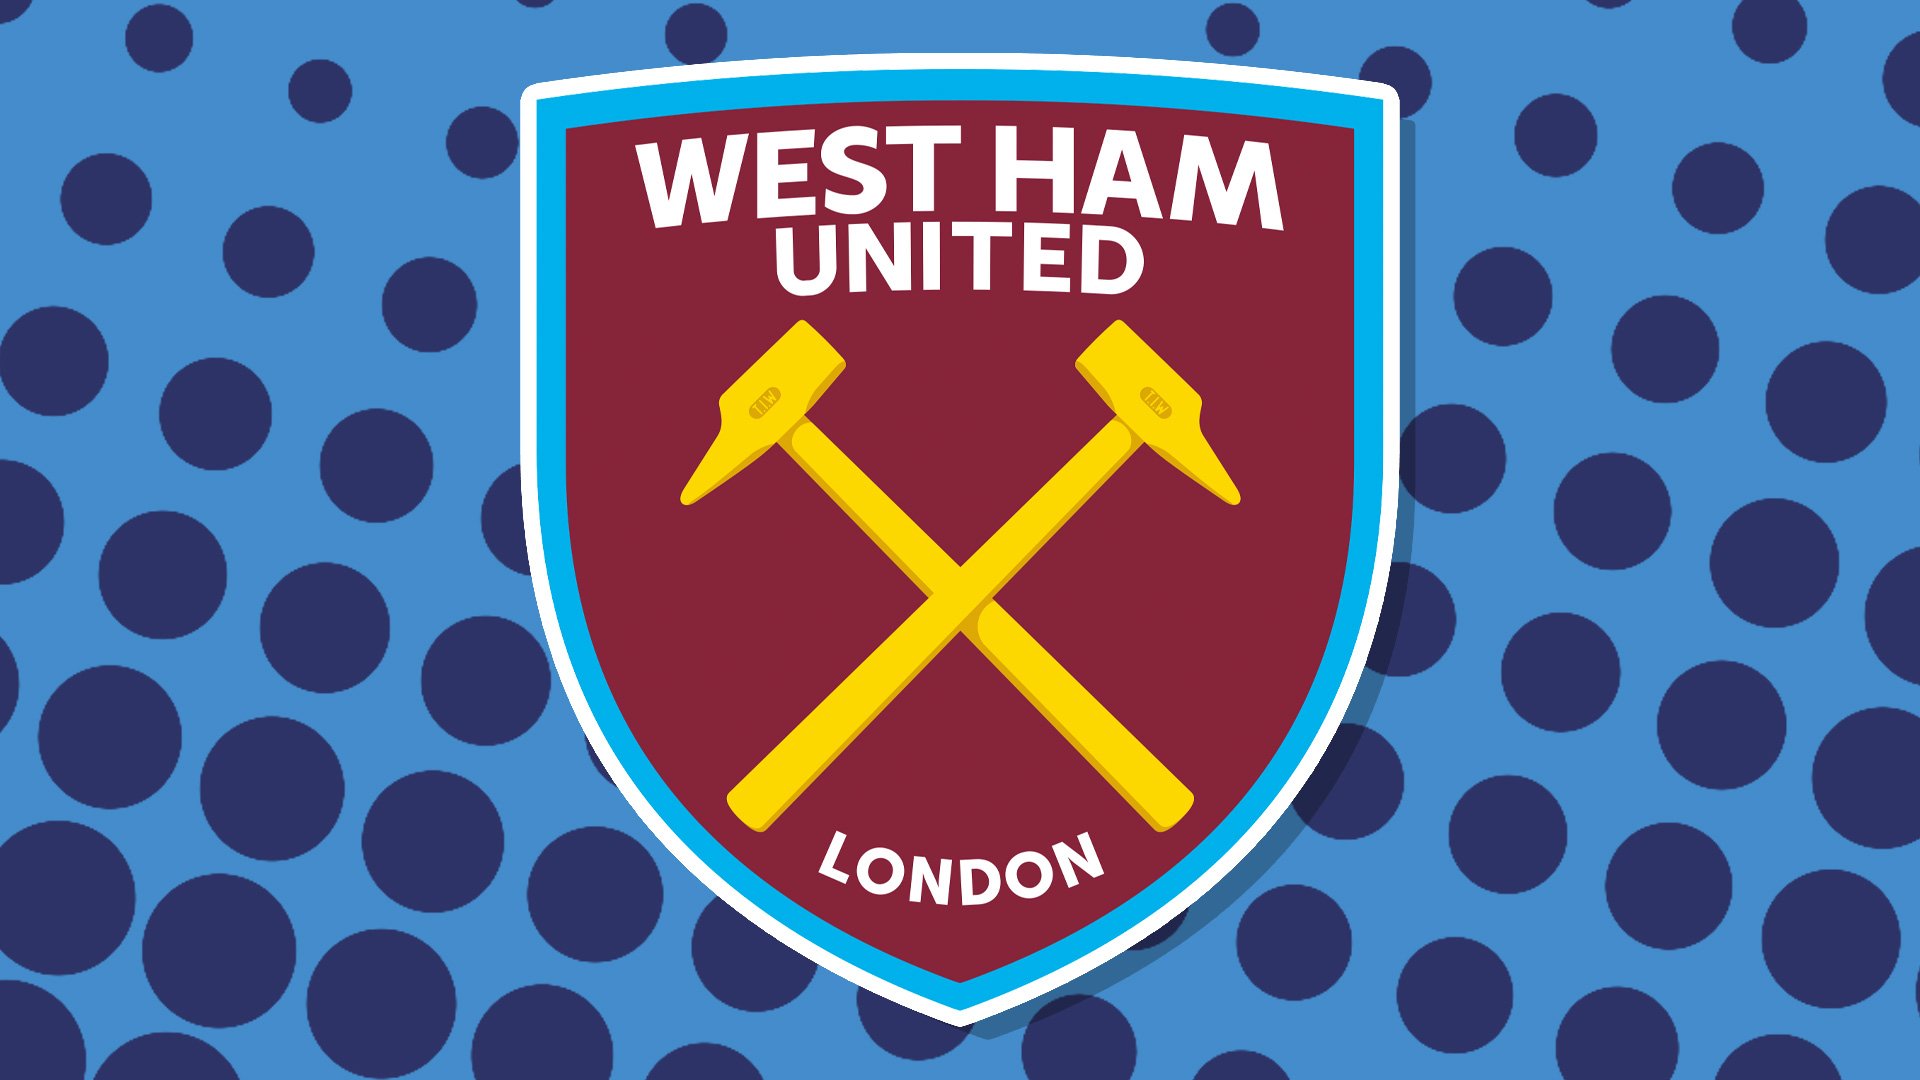 West Ham's badge